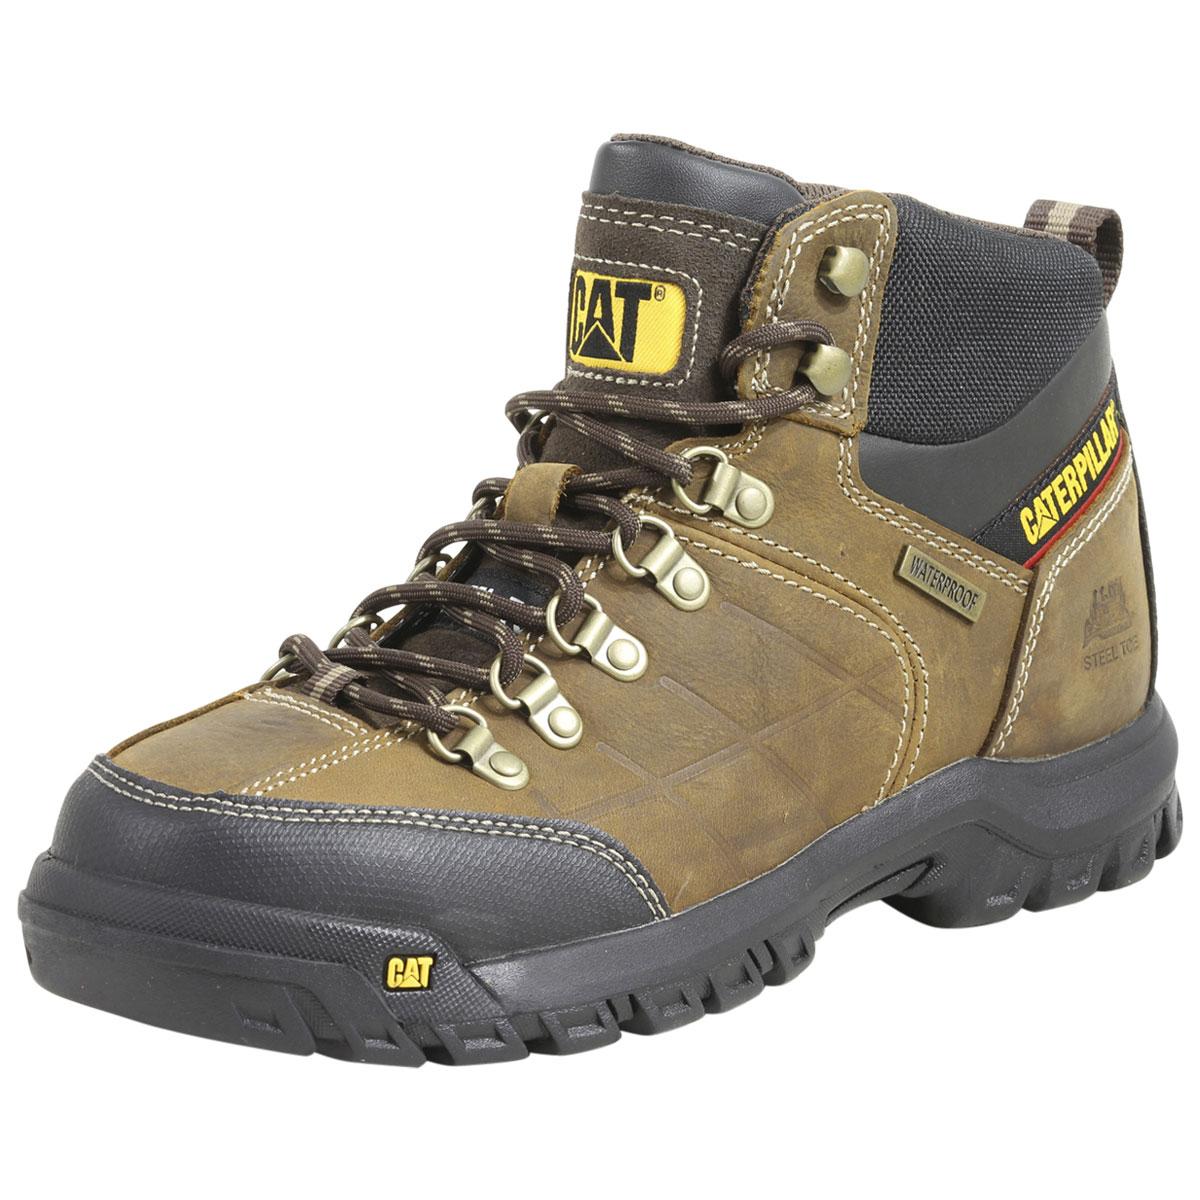 Caterpillar Men's Threshold Waterproof Steel Toe Work Boots Shoes - Brown - 9.5 D(M) US